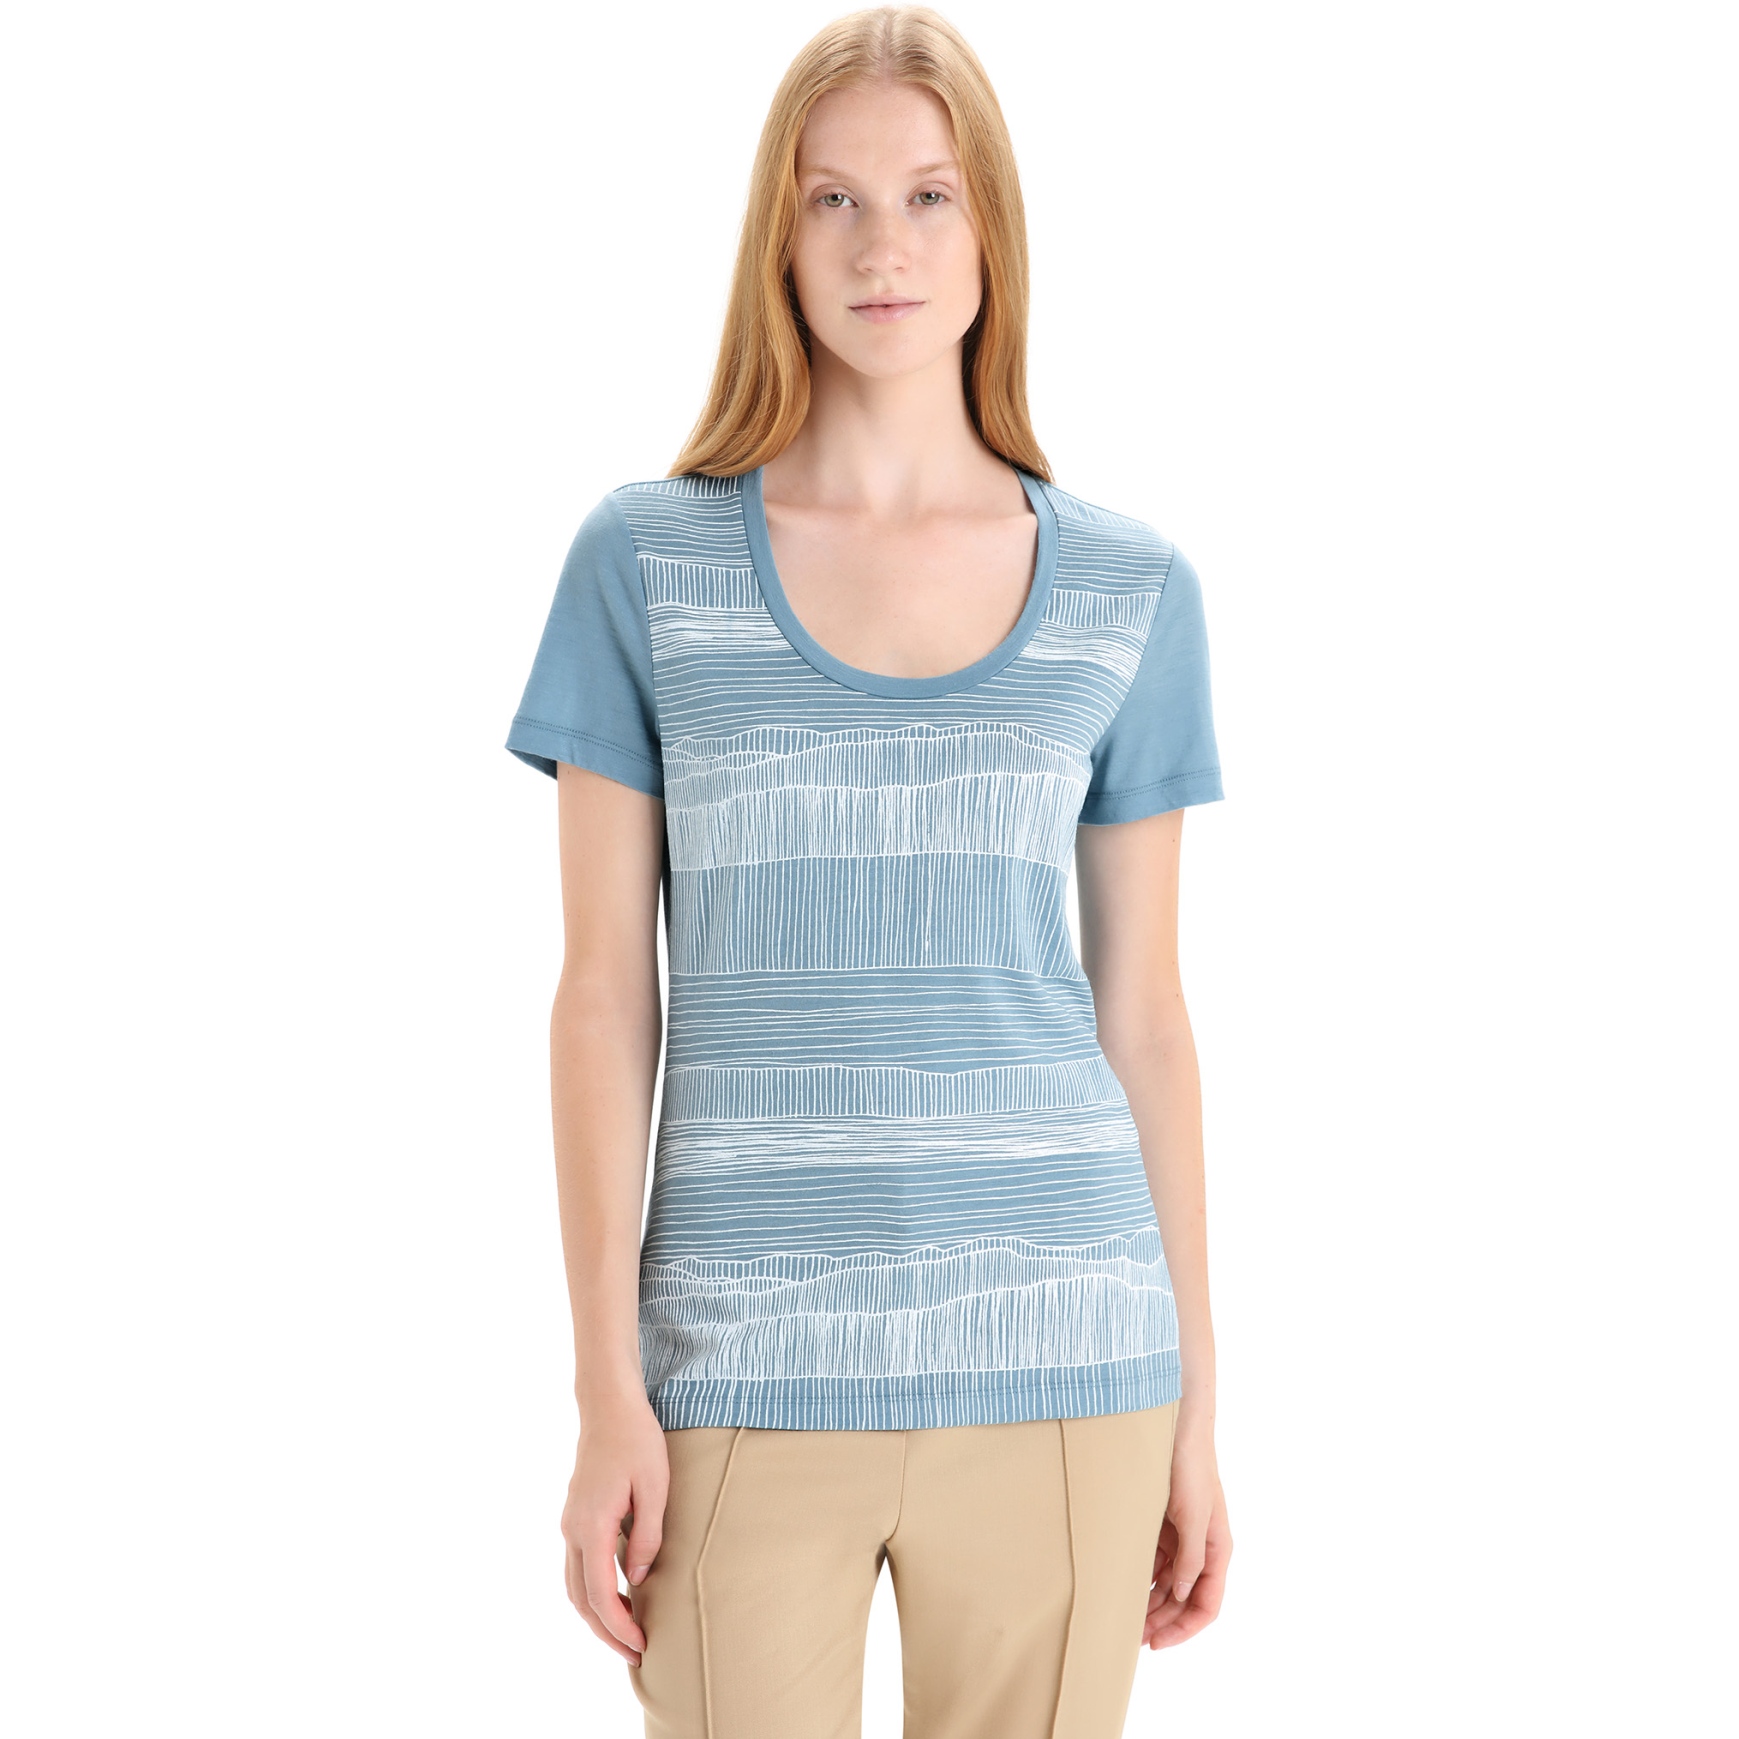 Produktbild von Icebreaker Tech Lite II Scoop Reflection Lines T-Shirt Damen - Astral Blue